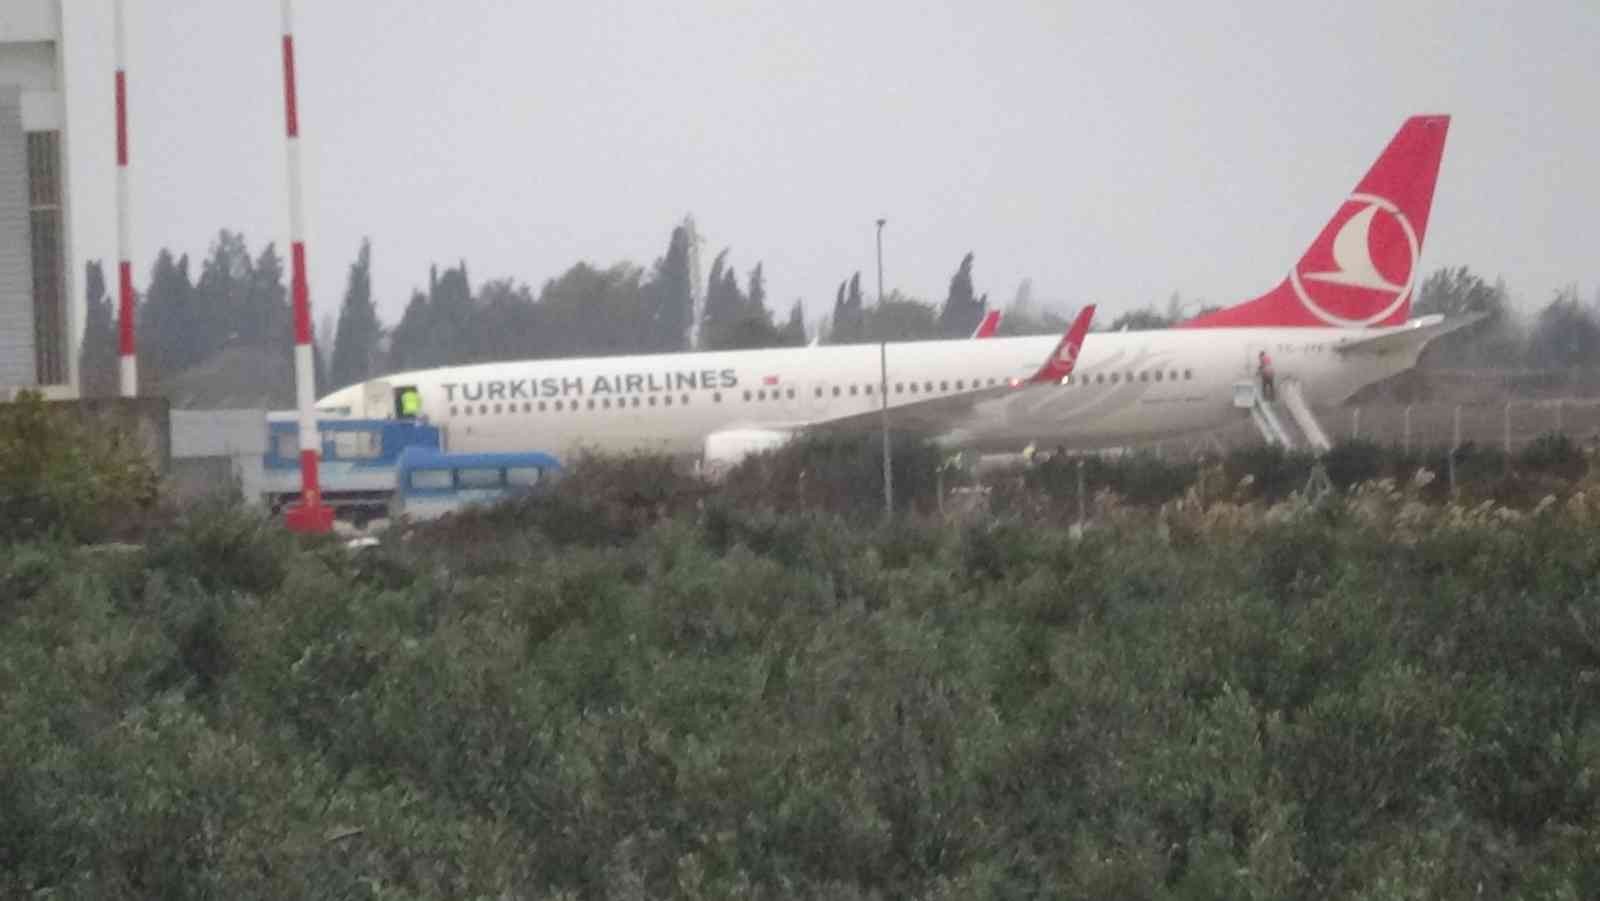 Lodos sebebiyle Diyarbakır-İstanbul seferini yapan THY’ye ait uçak Edremit’e yönlendirildi #balikesir